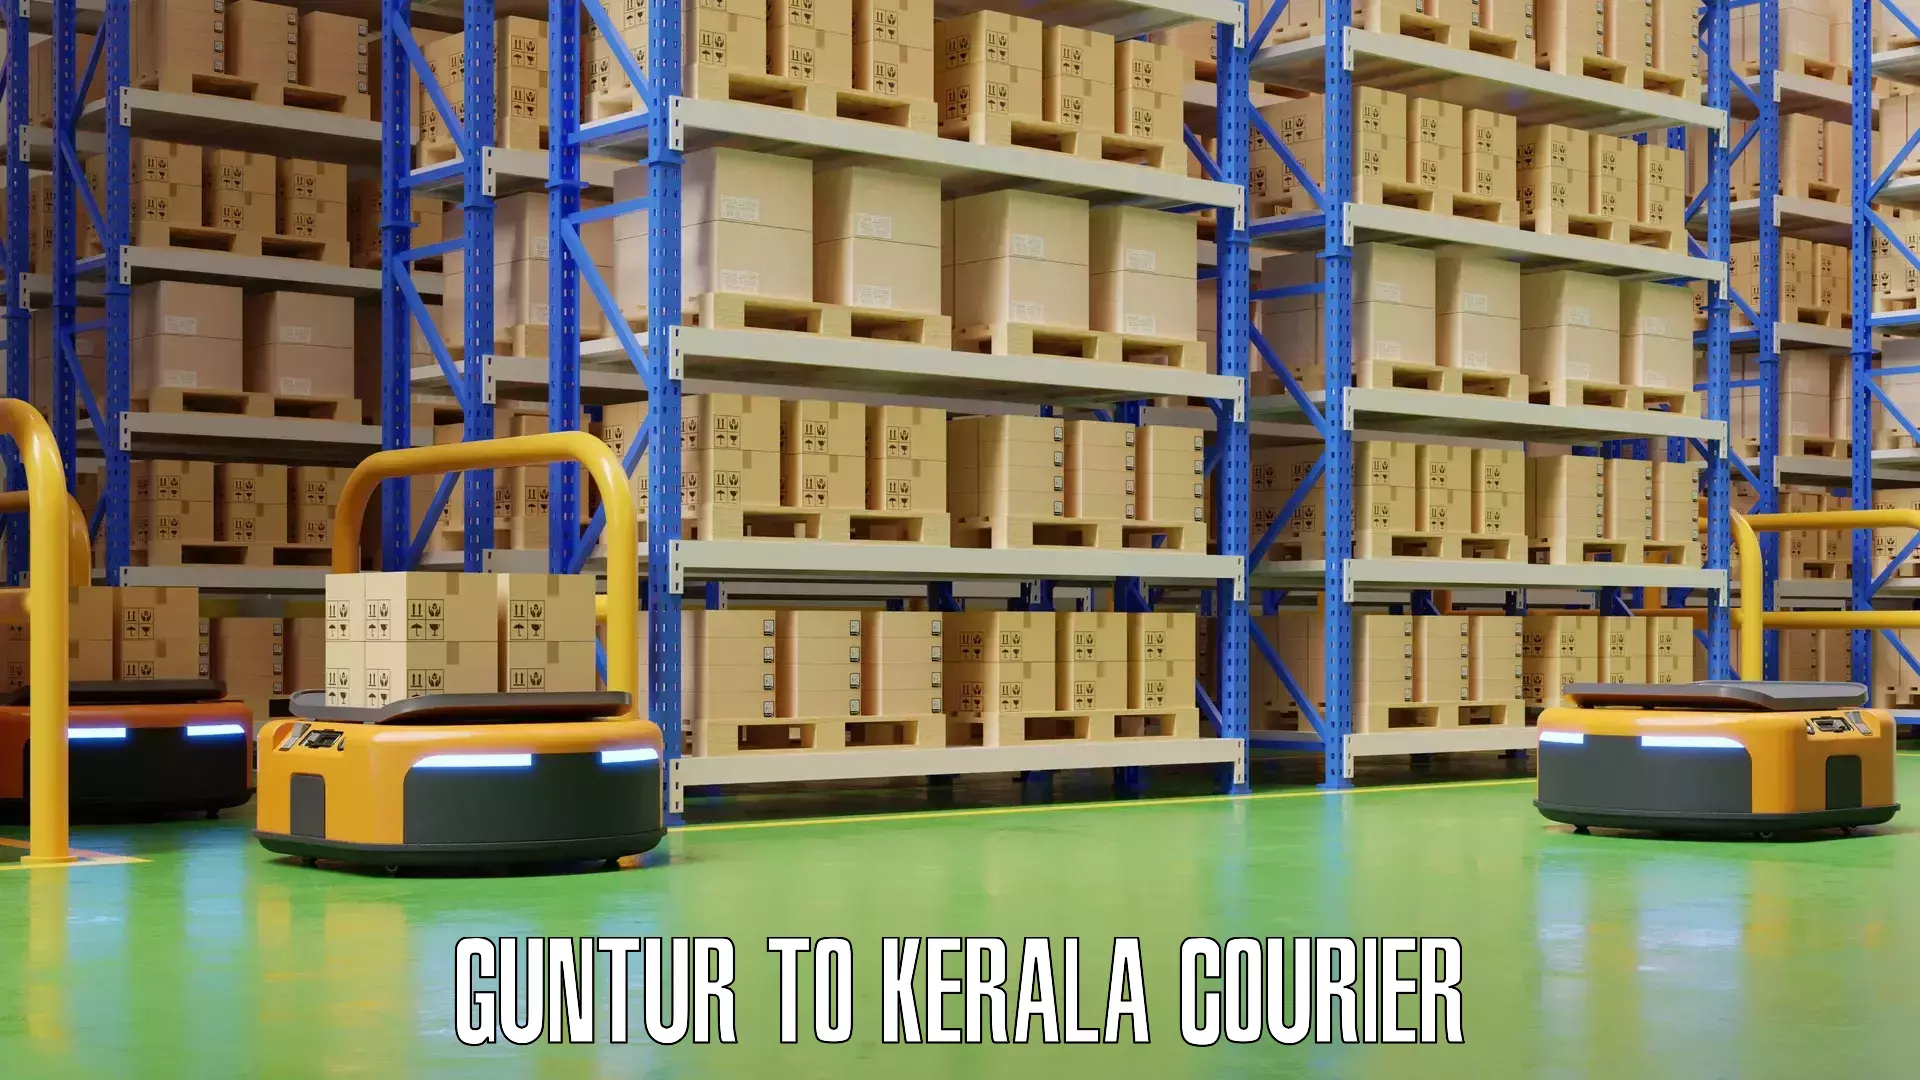 Doorstep luggage collection Guntur to Kerala